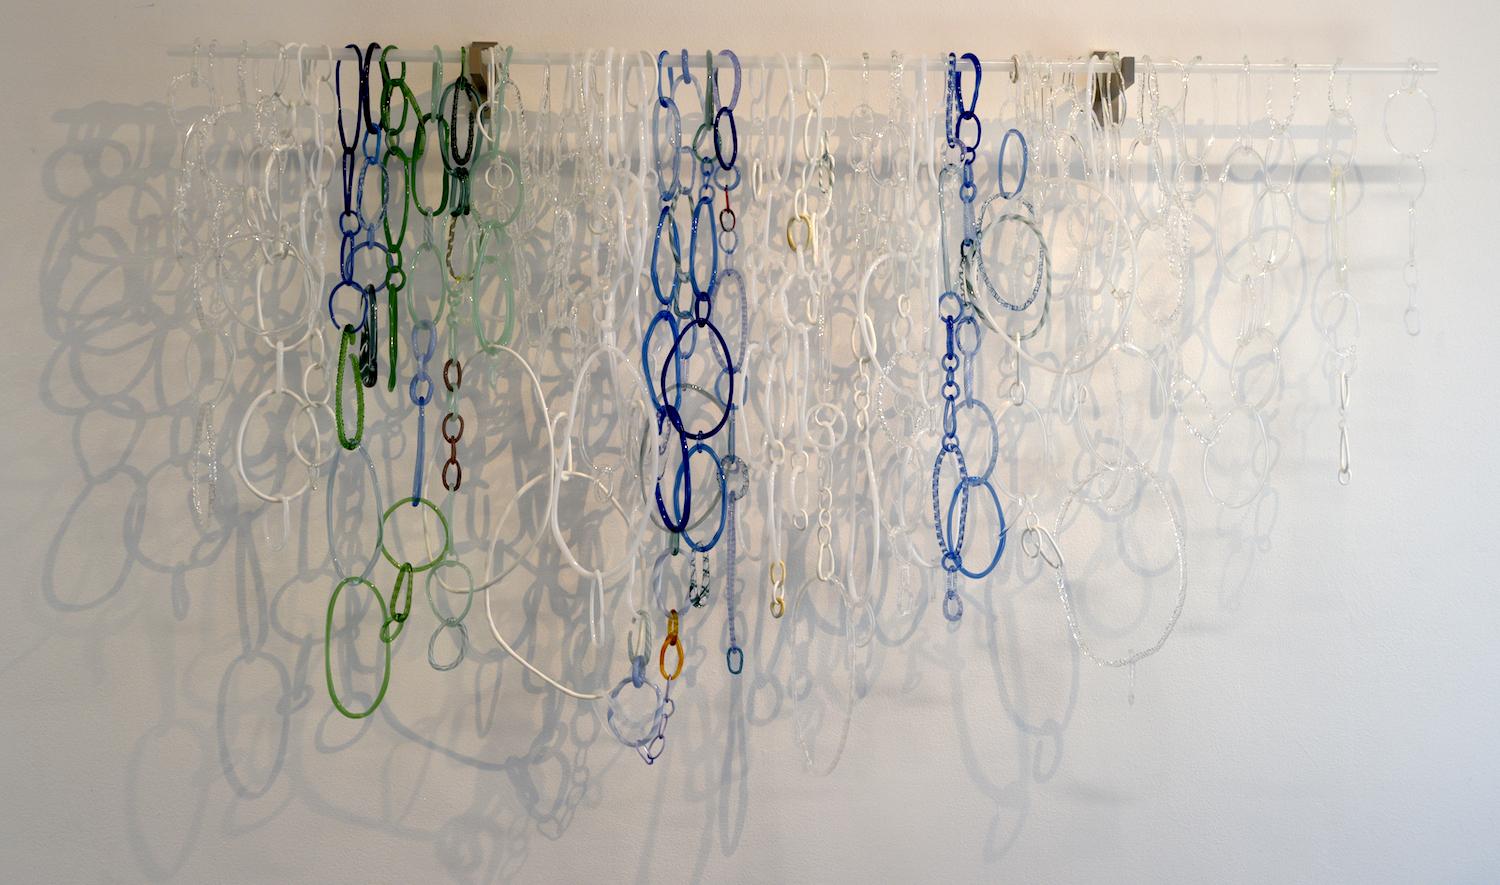 David Licata Abstract Sculpture – Frozen I, Hängeskulptur, Fackelglas, Fackelbearbeitetes Glas, weiße, blaue, grüne Schleifen